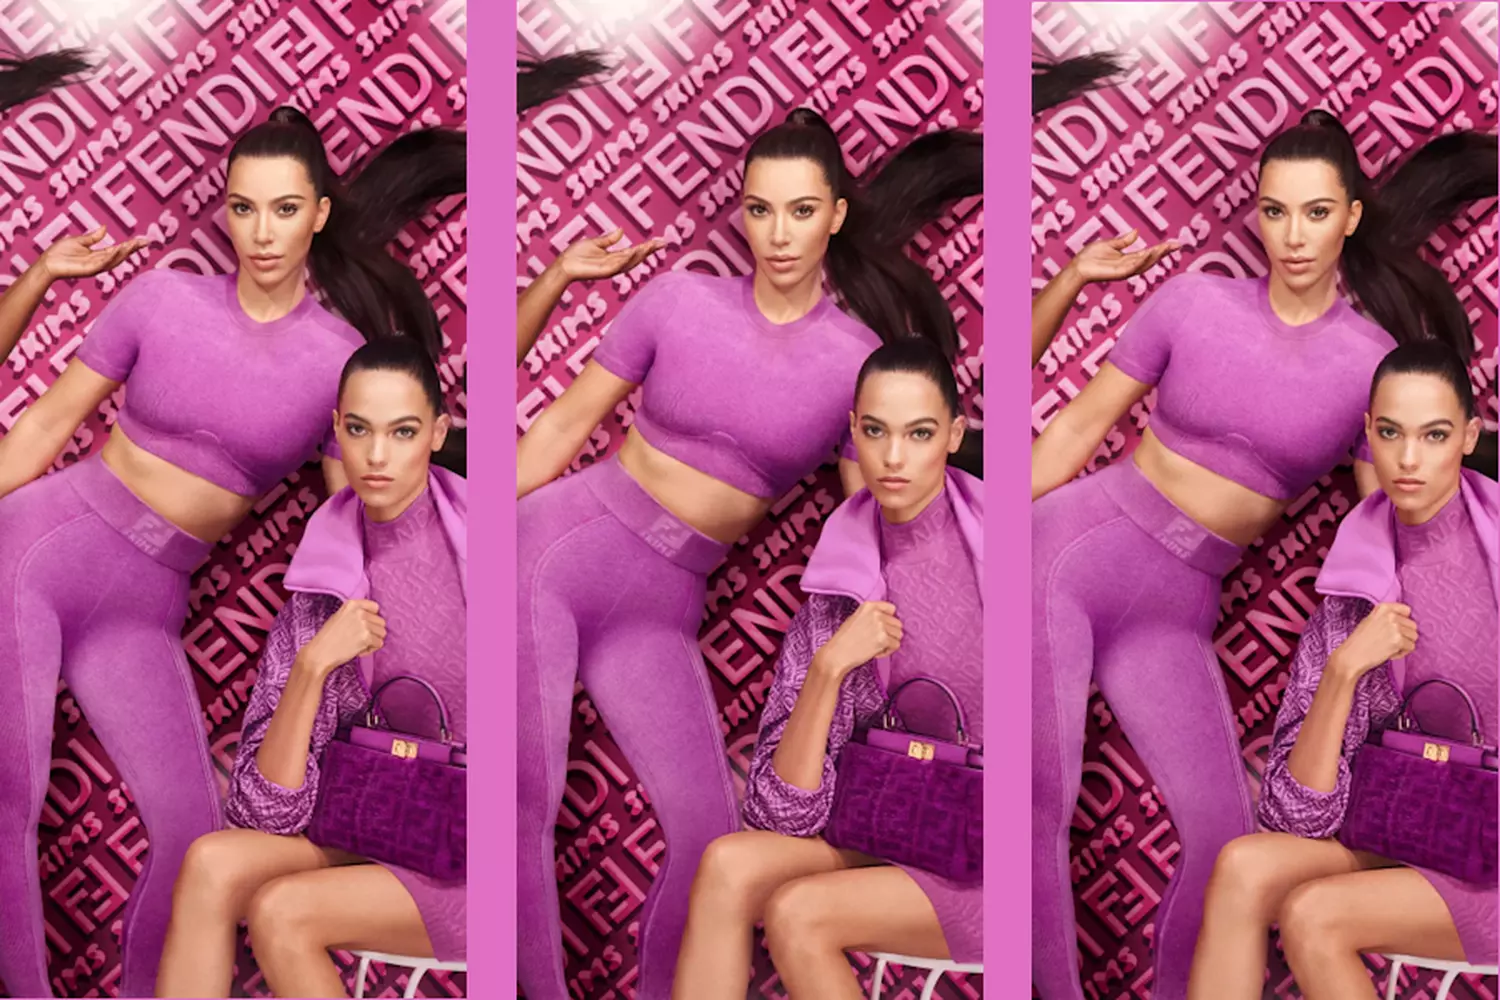 Fendi x Skims – kolaboracja włoskiego domu mody i marki Kim Kardashian